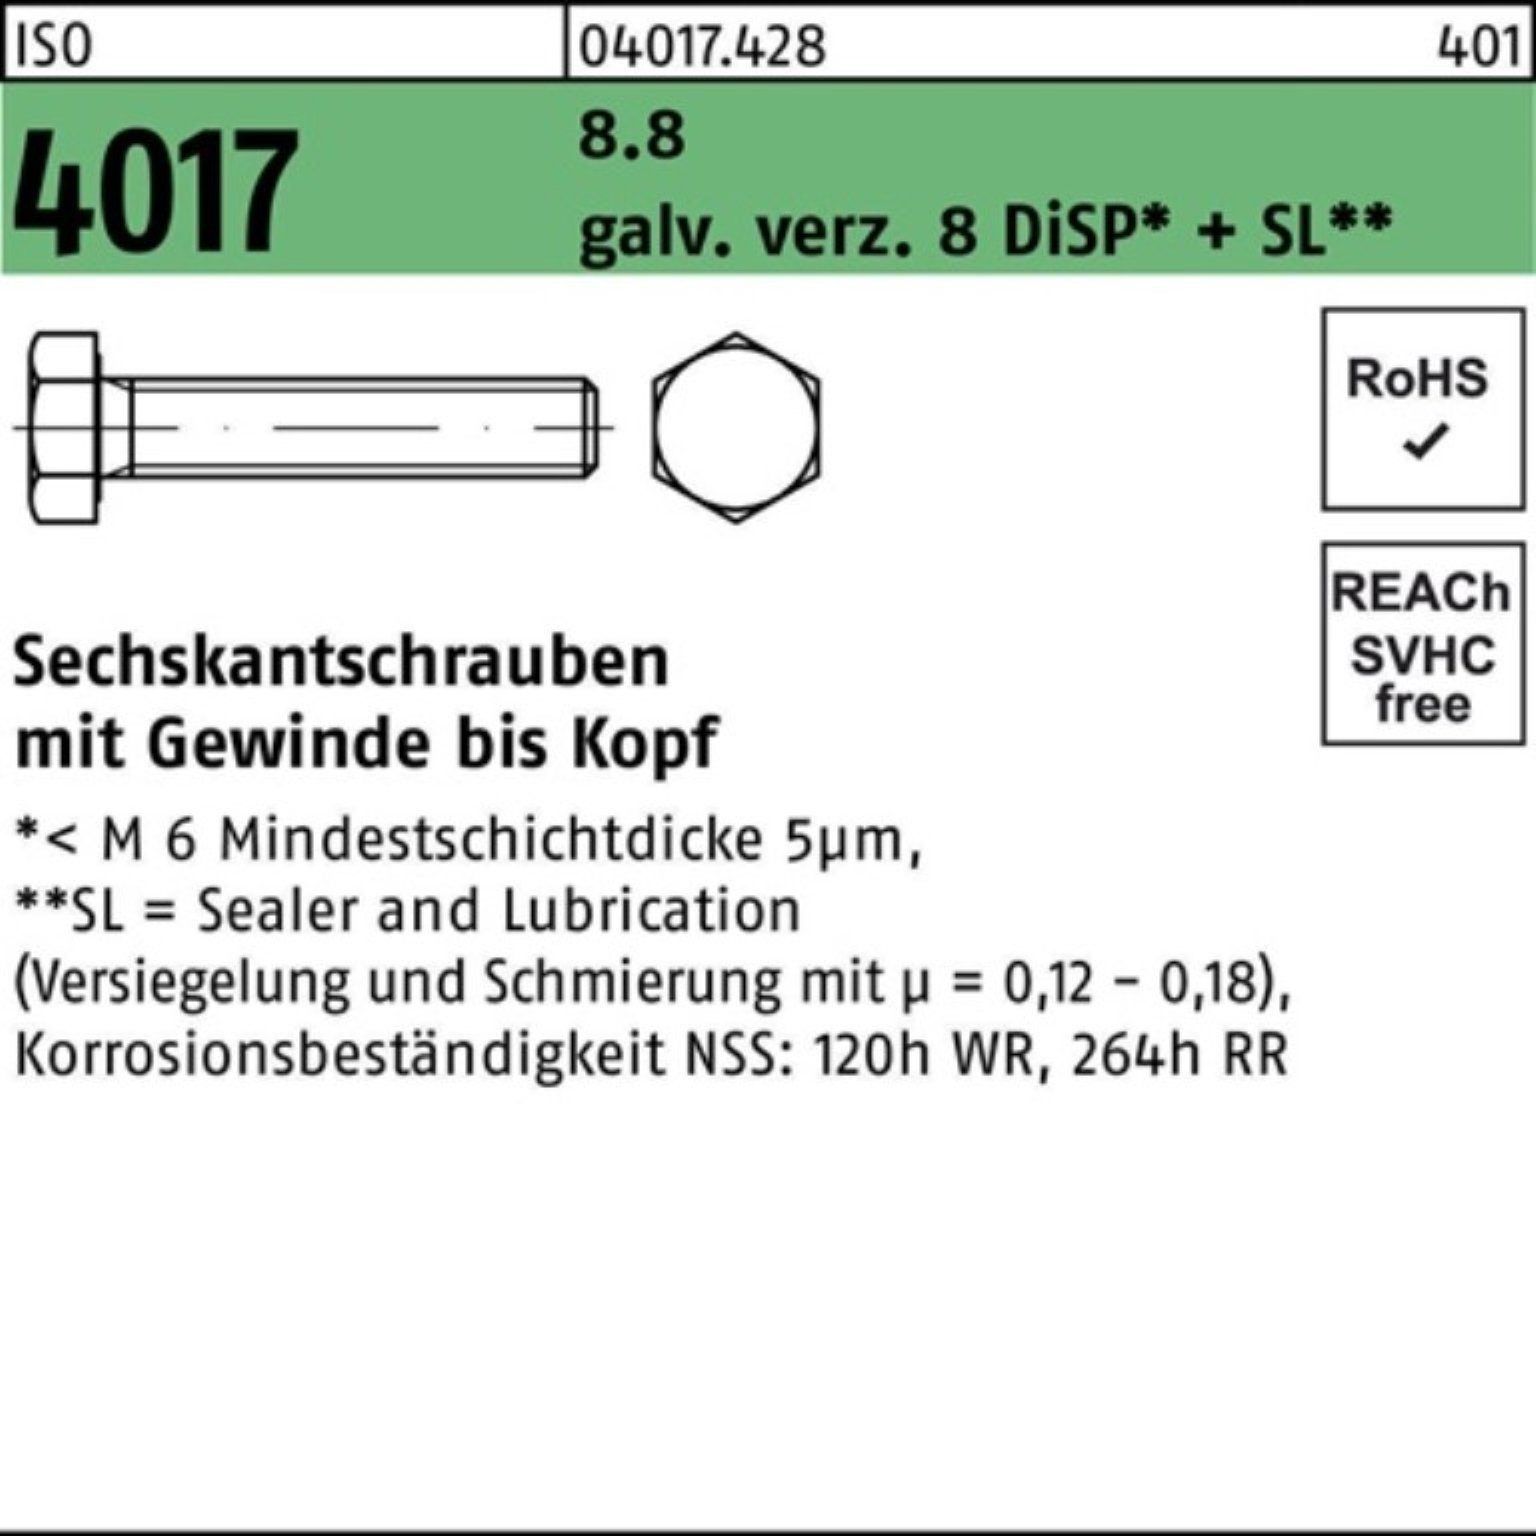 ISO Sechskantschraube Sechskantschraube DiSP M20x 65 Pack 8.8 100er VG 4017 8 Bufab galv.verz.